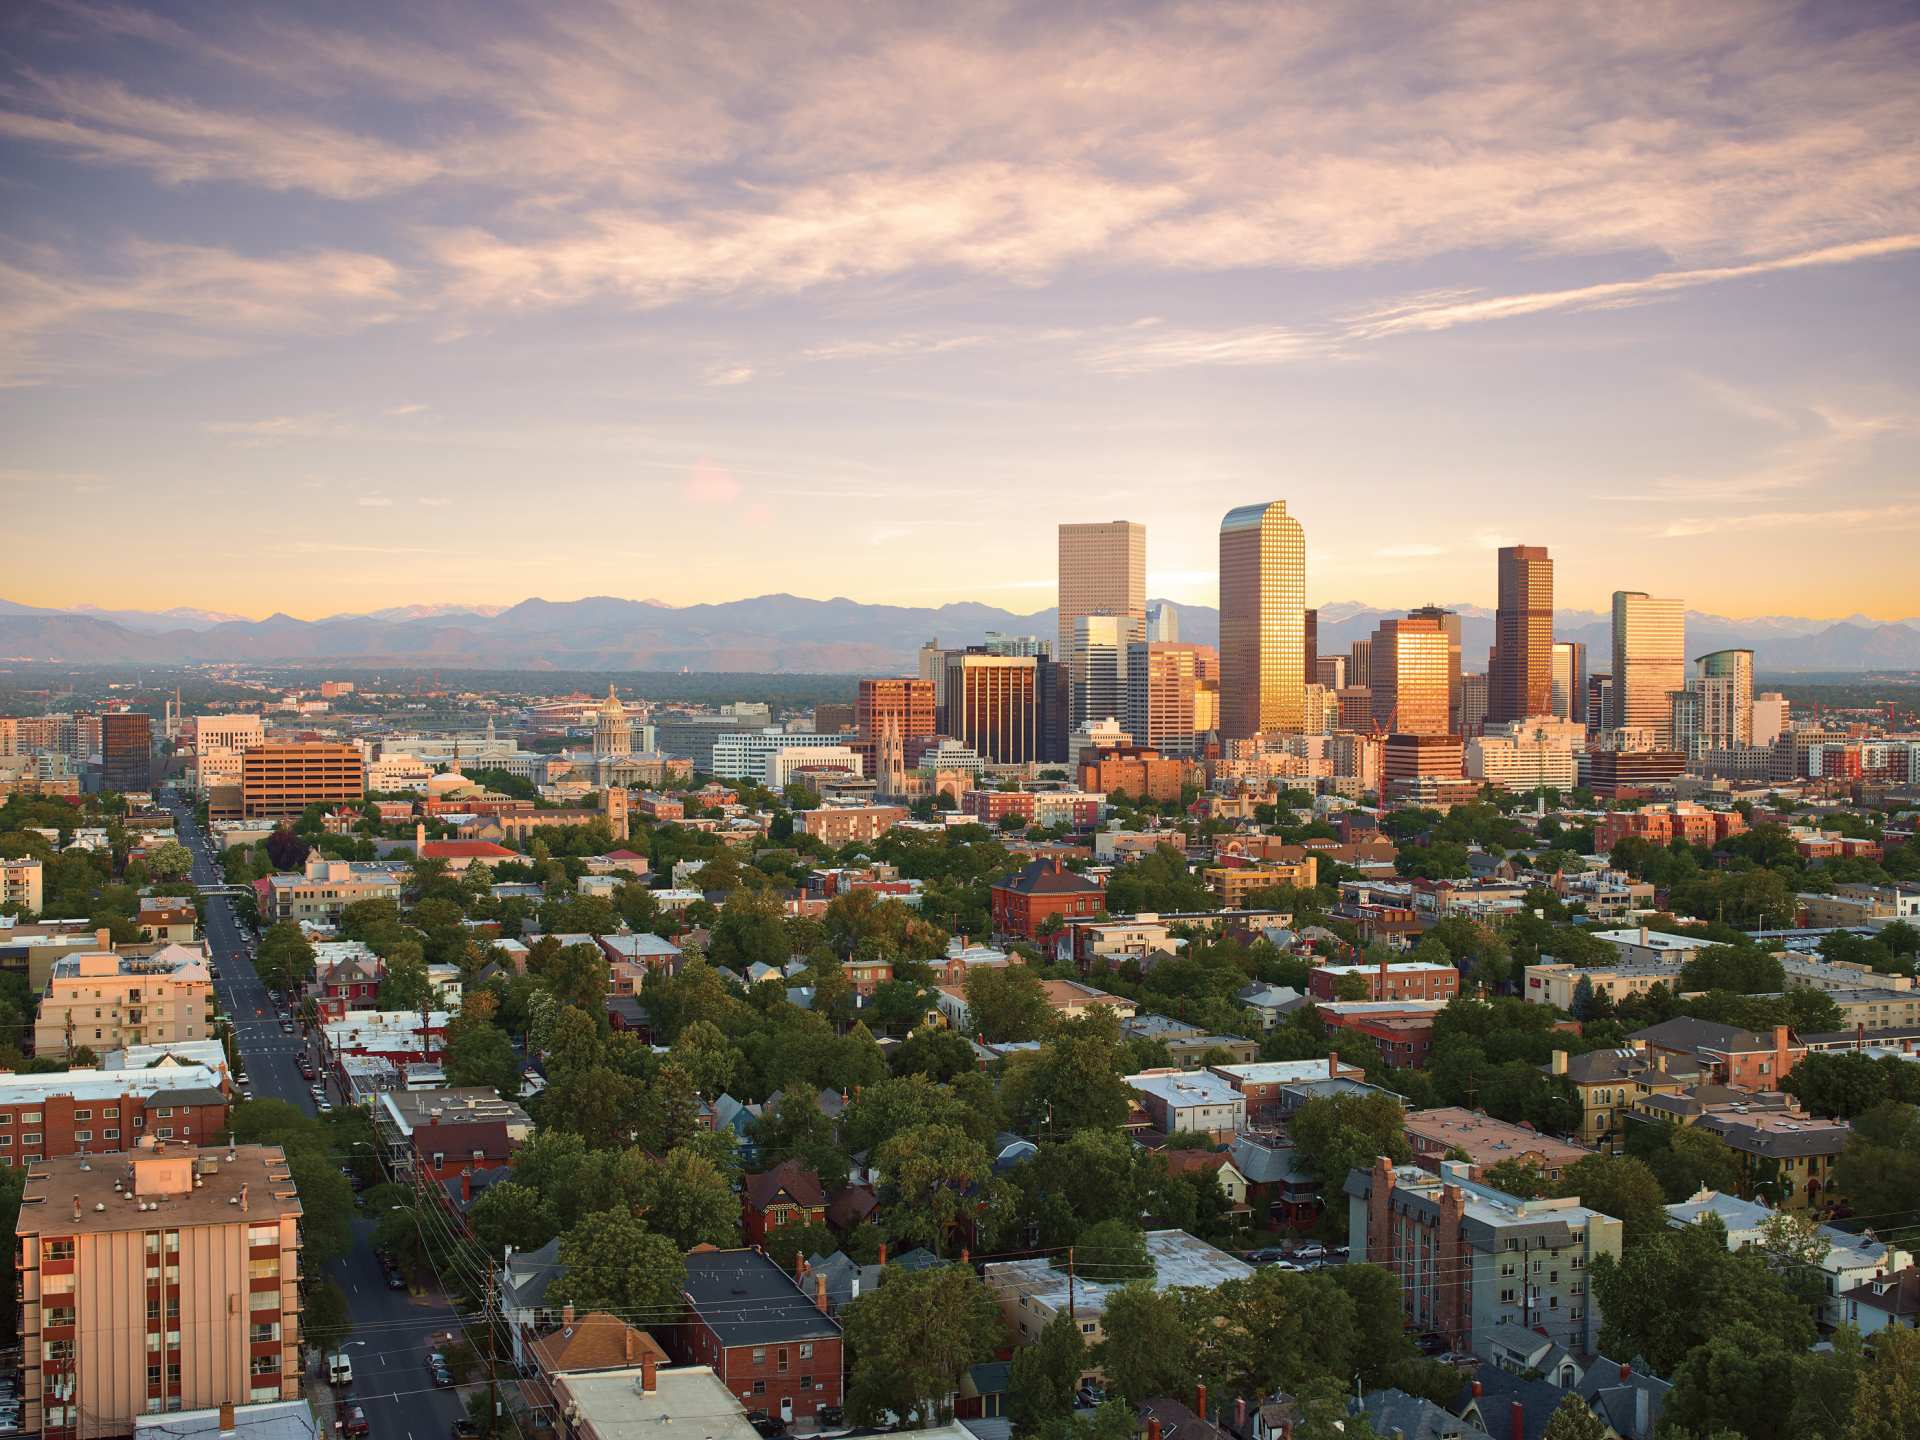 The cityscape in Denver, Colorado